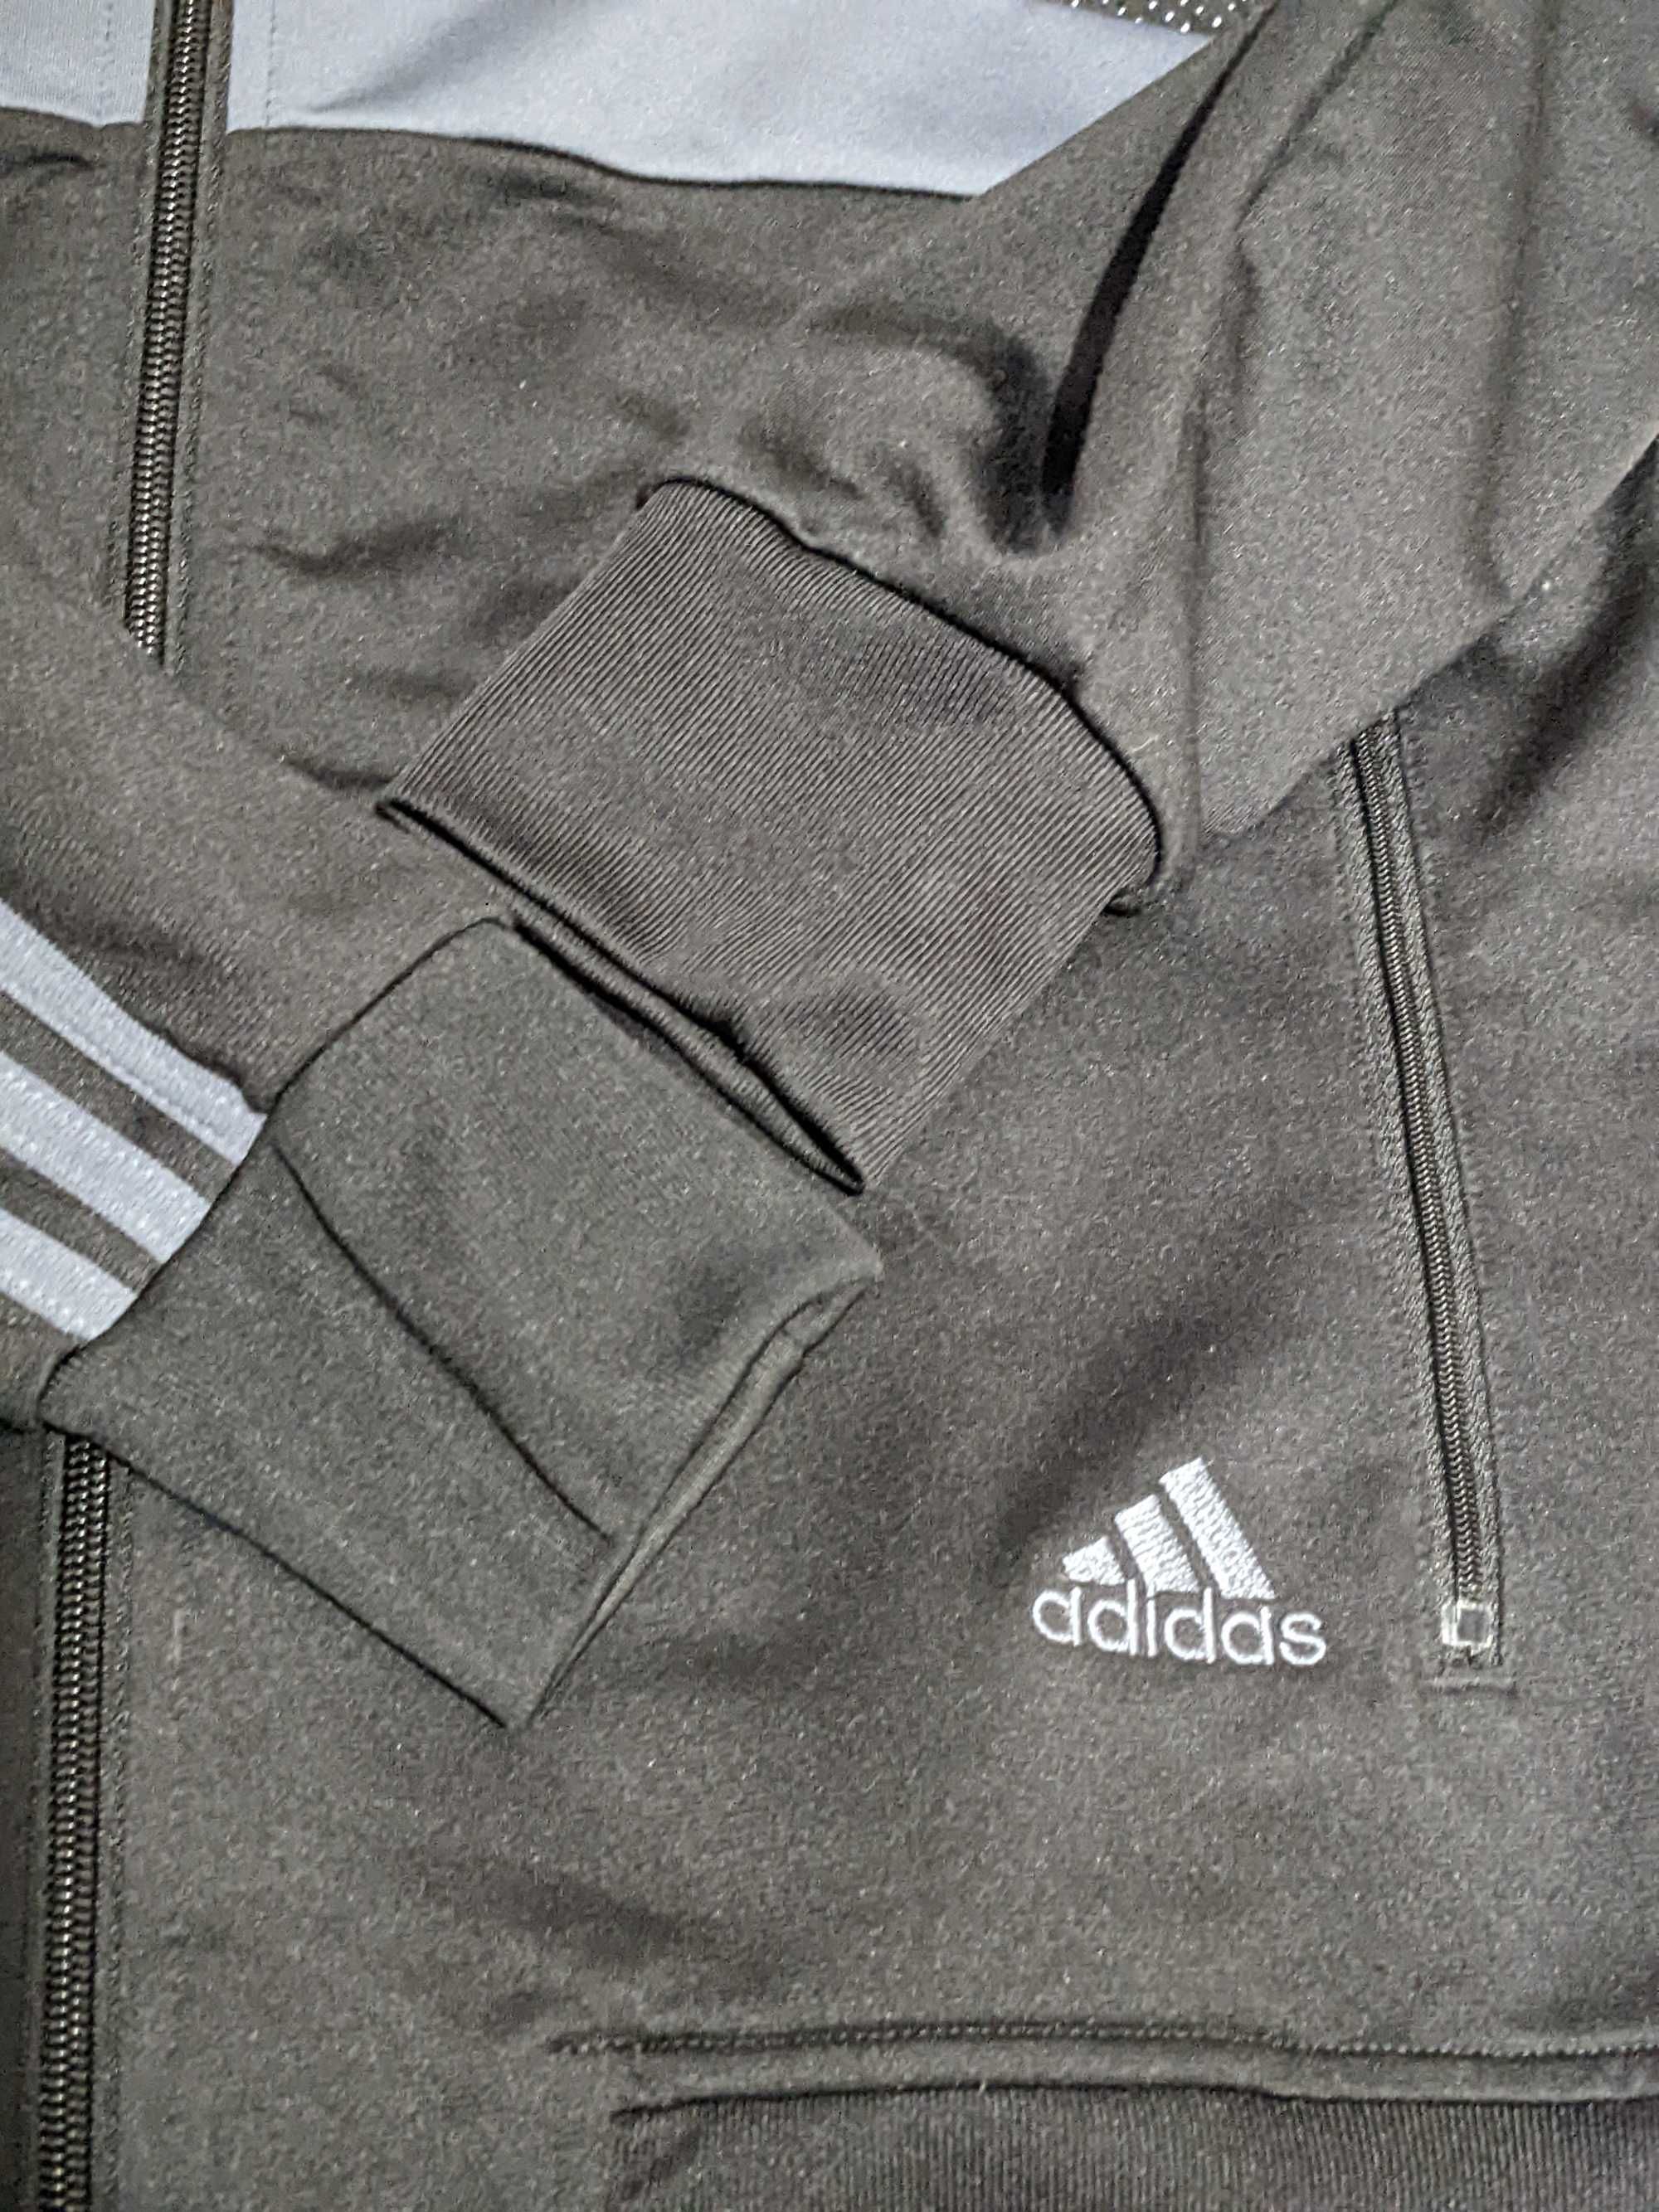 Спортивная кофта  "Adidas", оригинал.